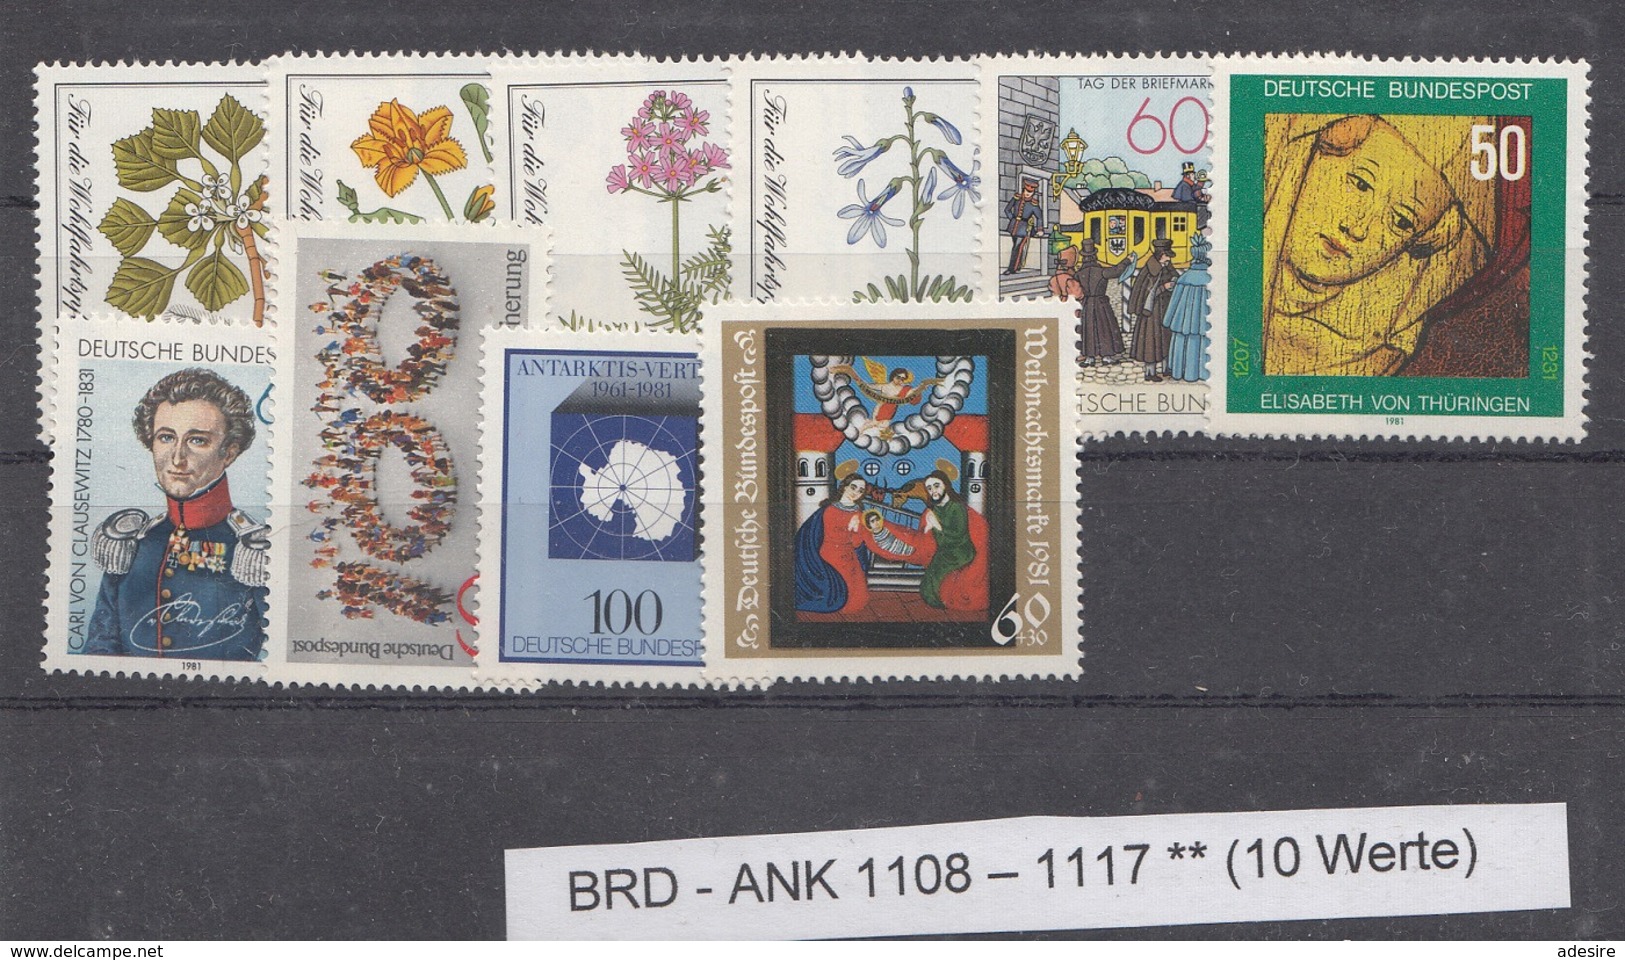 Lot Briefmarken BRD 1981 ** Ank1108 - 1117 (10 Werte) - Unused Stamps